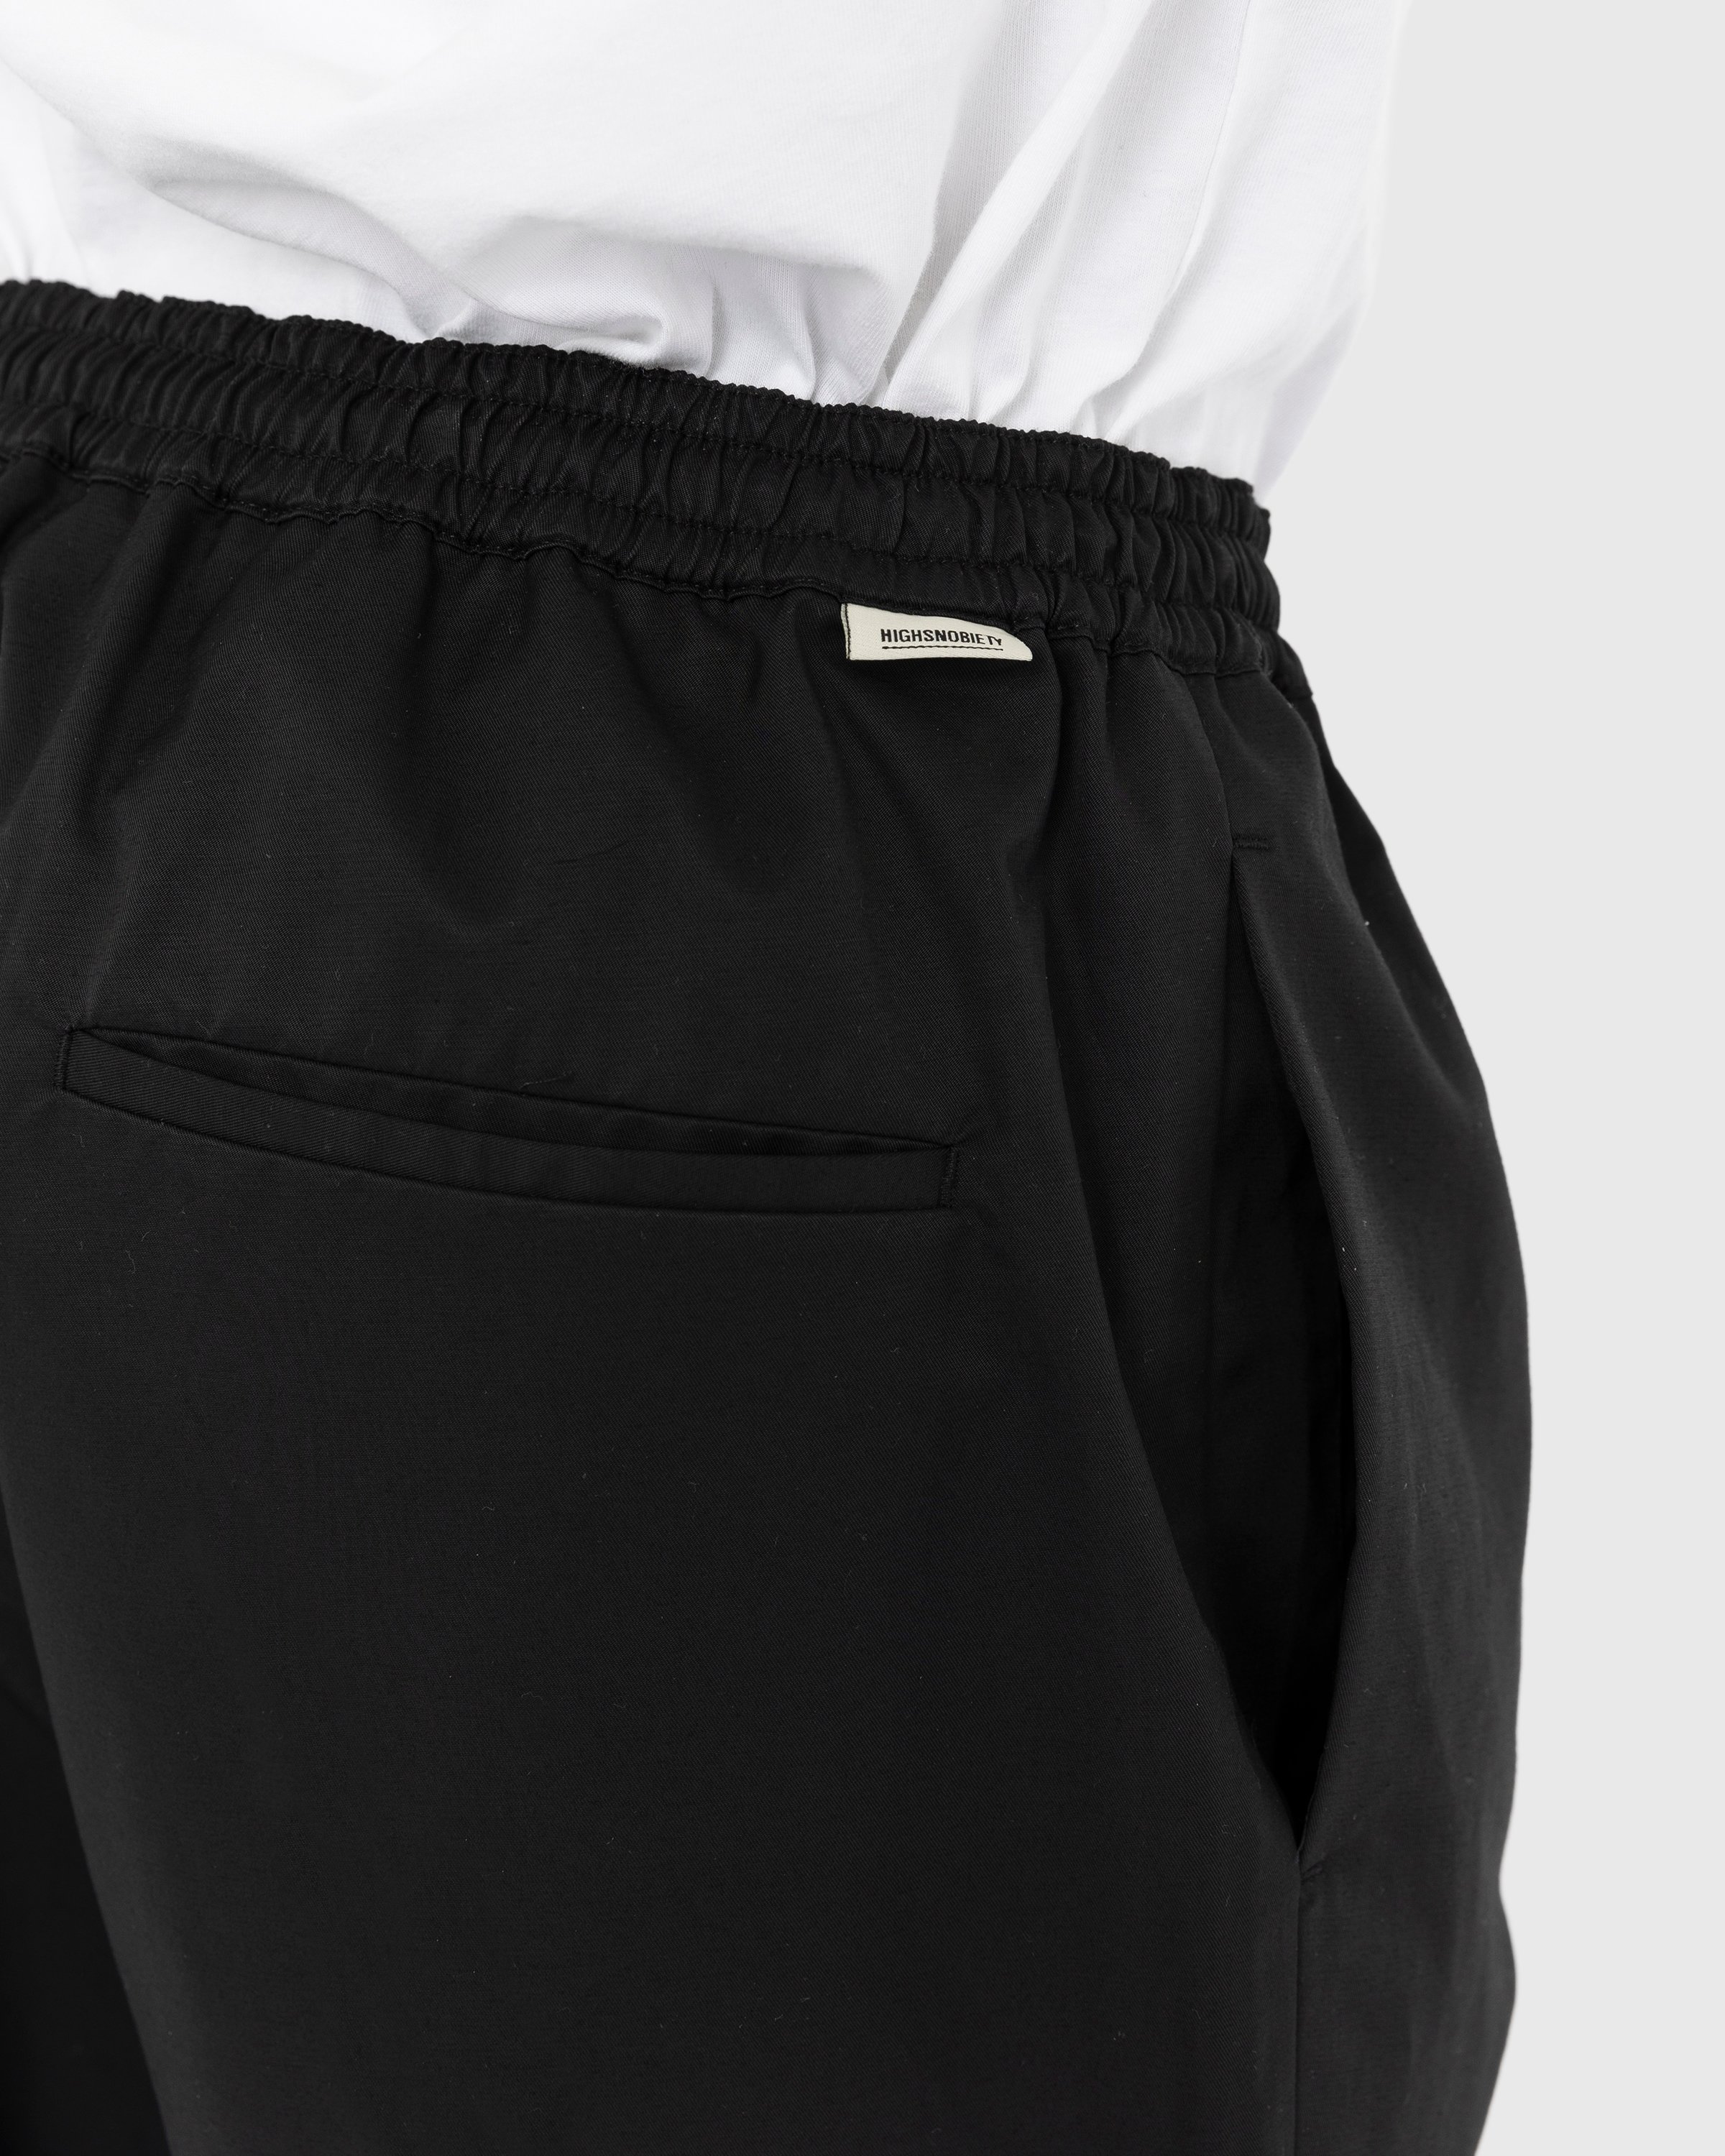 Highsnobiety - Cotton Nylon Elastic Pants Black - Clothing - Black - Image 6